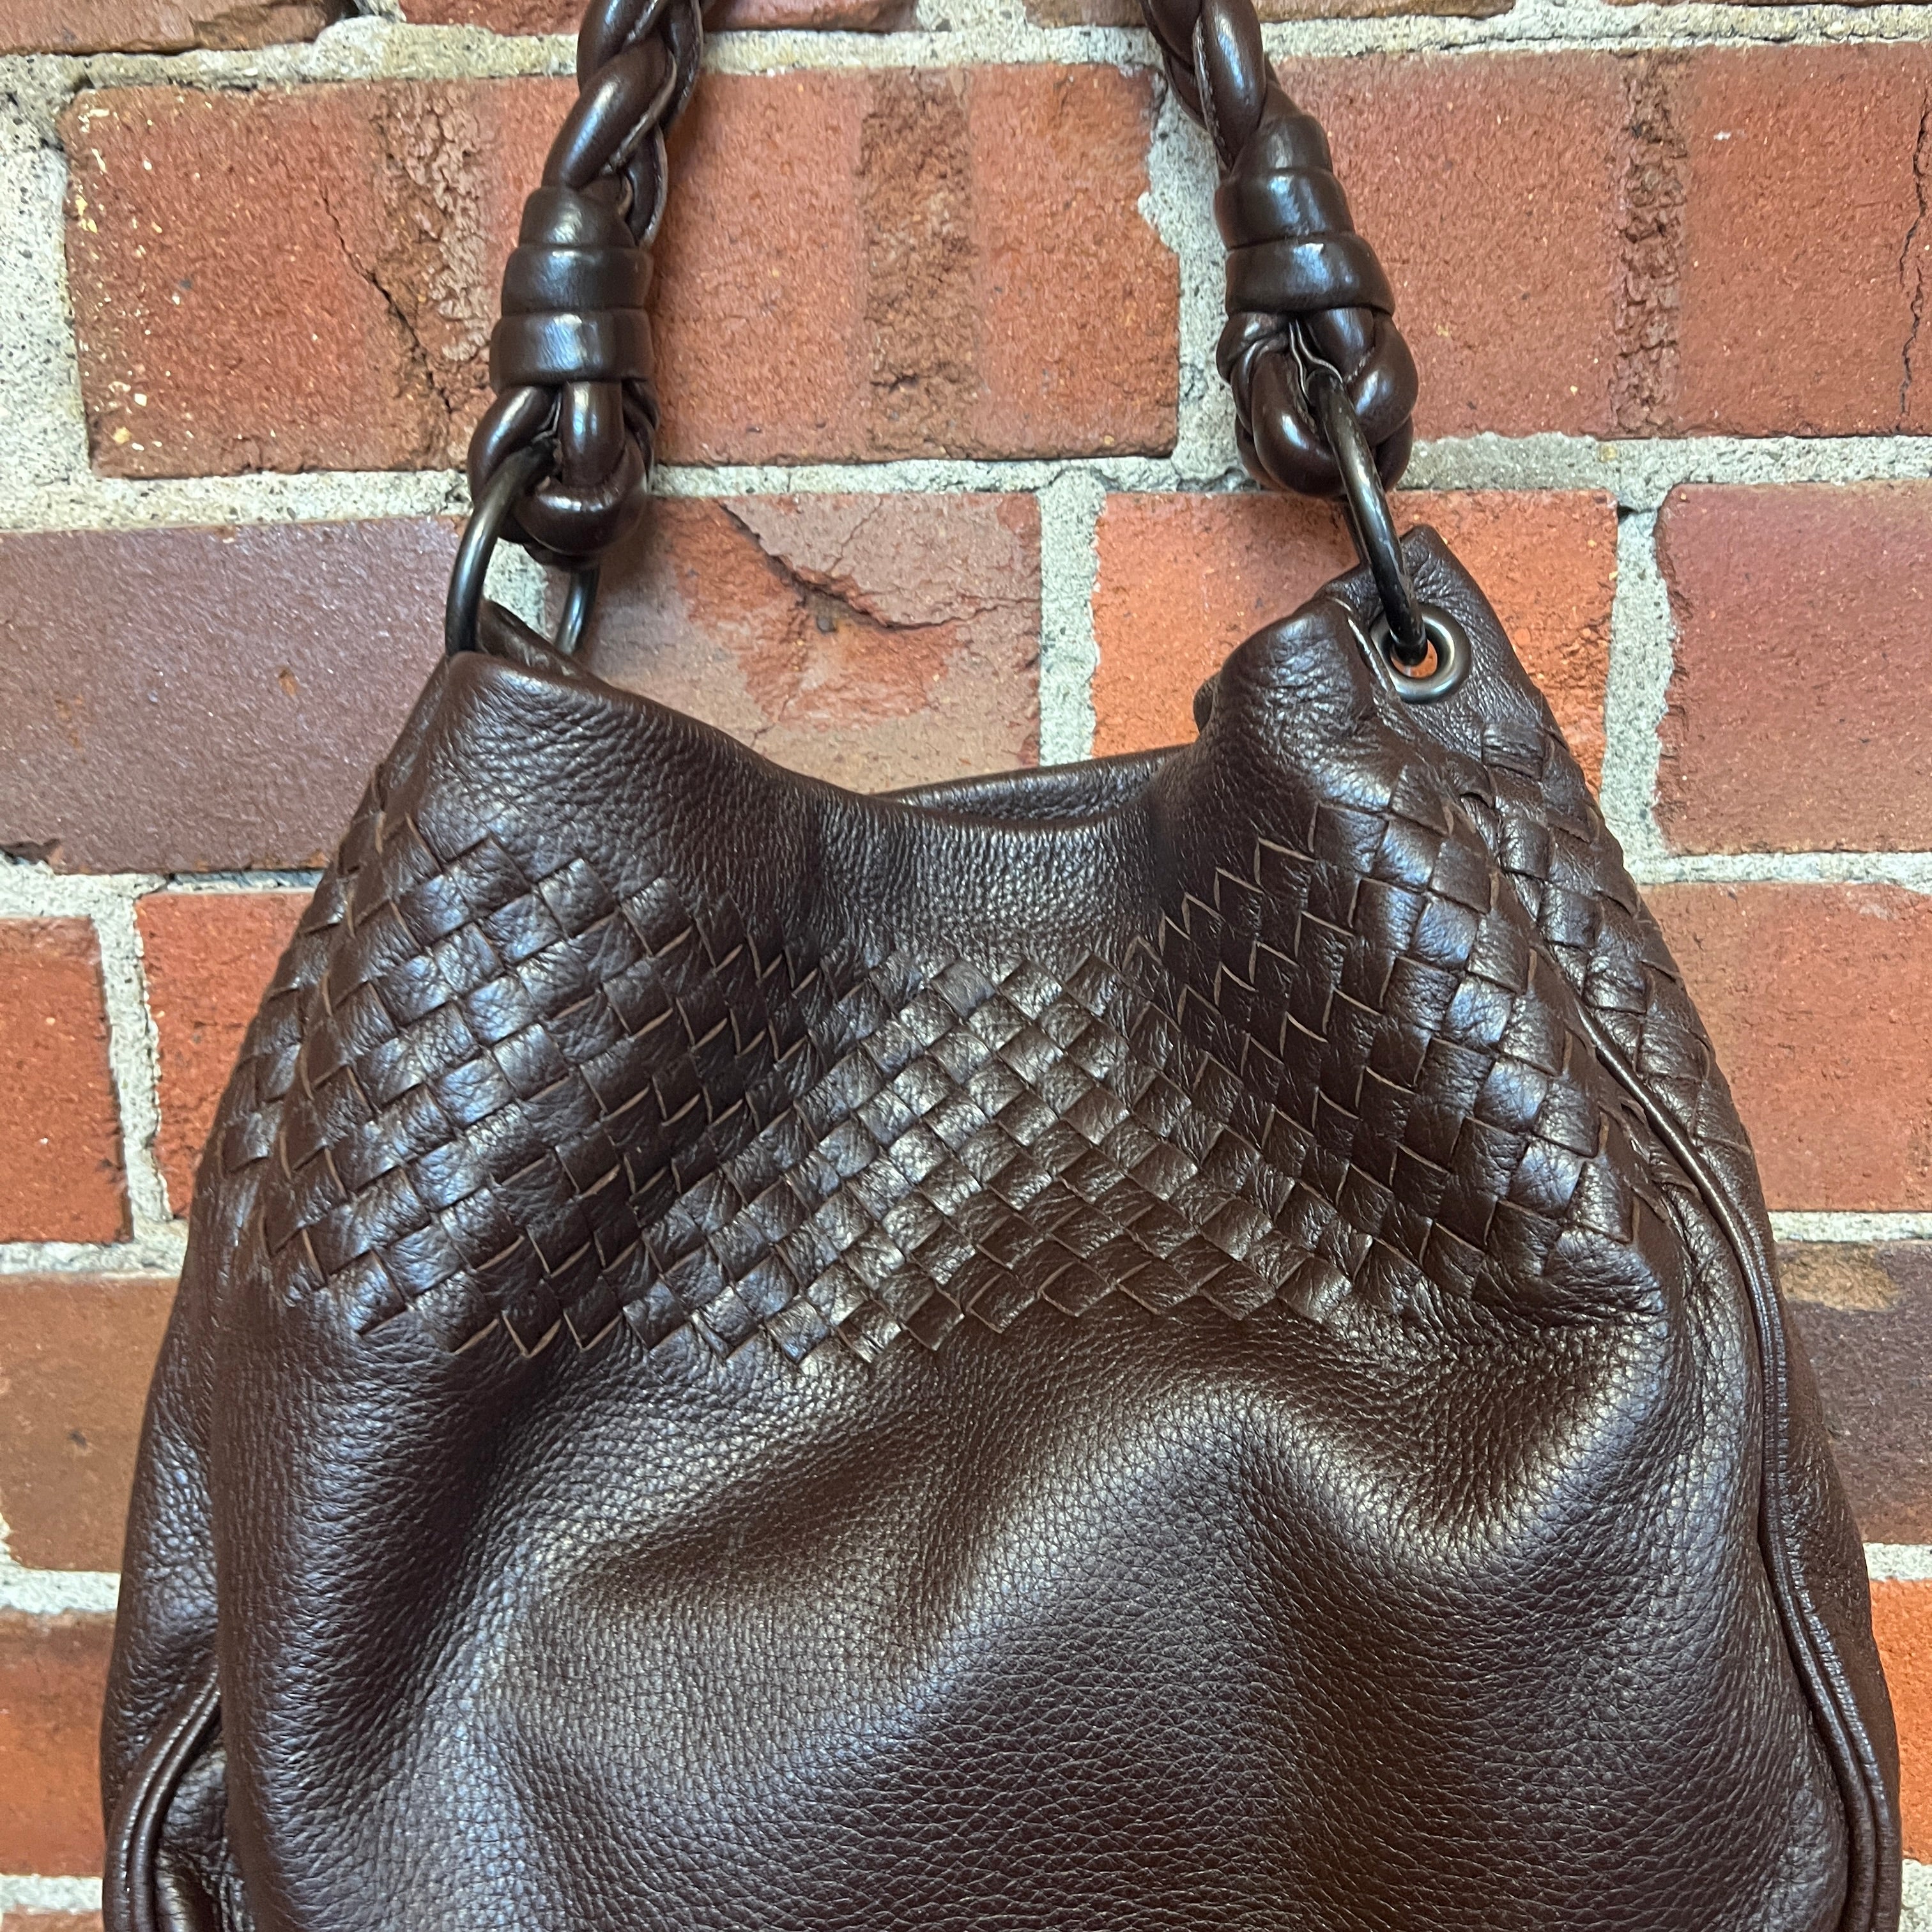 BOTTEGA VENETA intrecciato leather hobo handbag